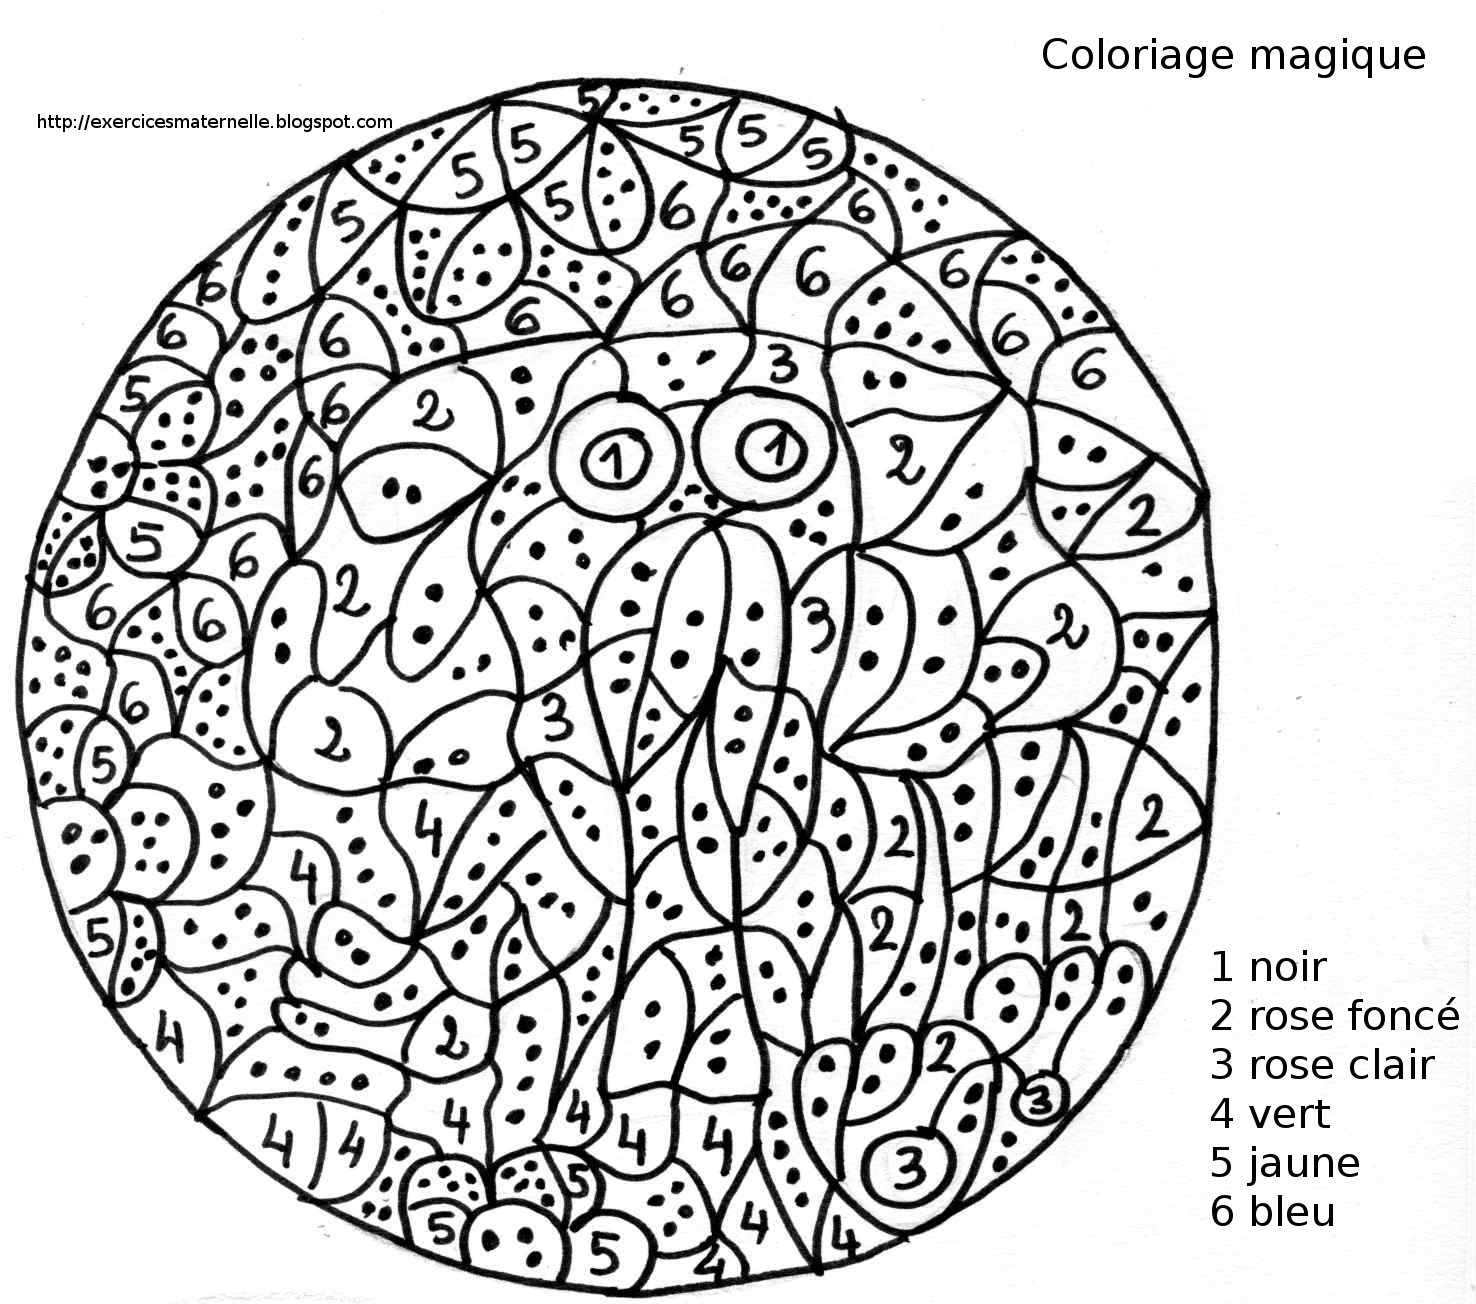 23 Dessins De Coloriage Magique Maternelle À Imprimer pour Coloriage Magique Maternelle Moyenne Section